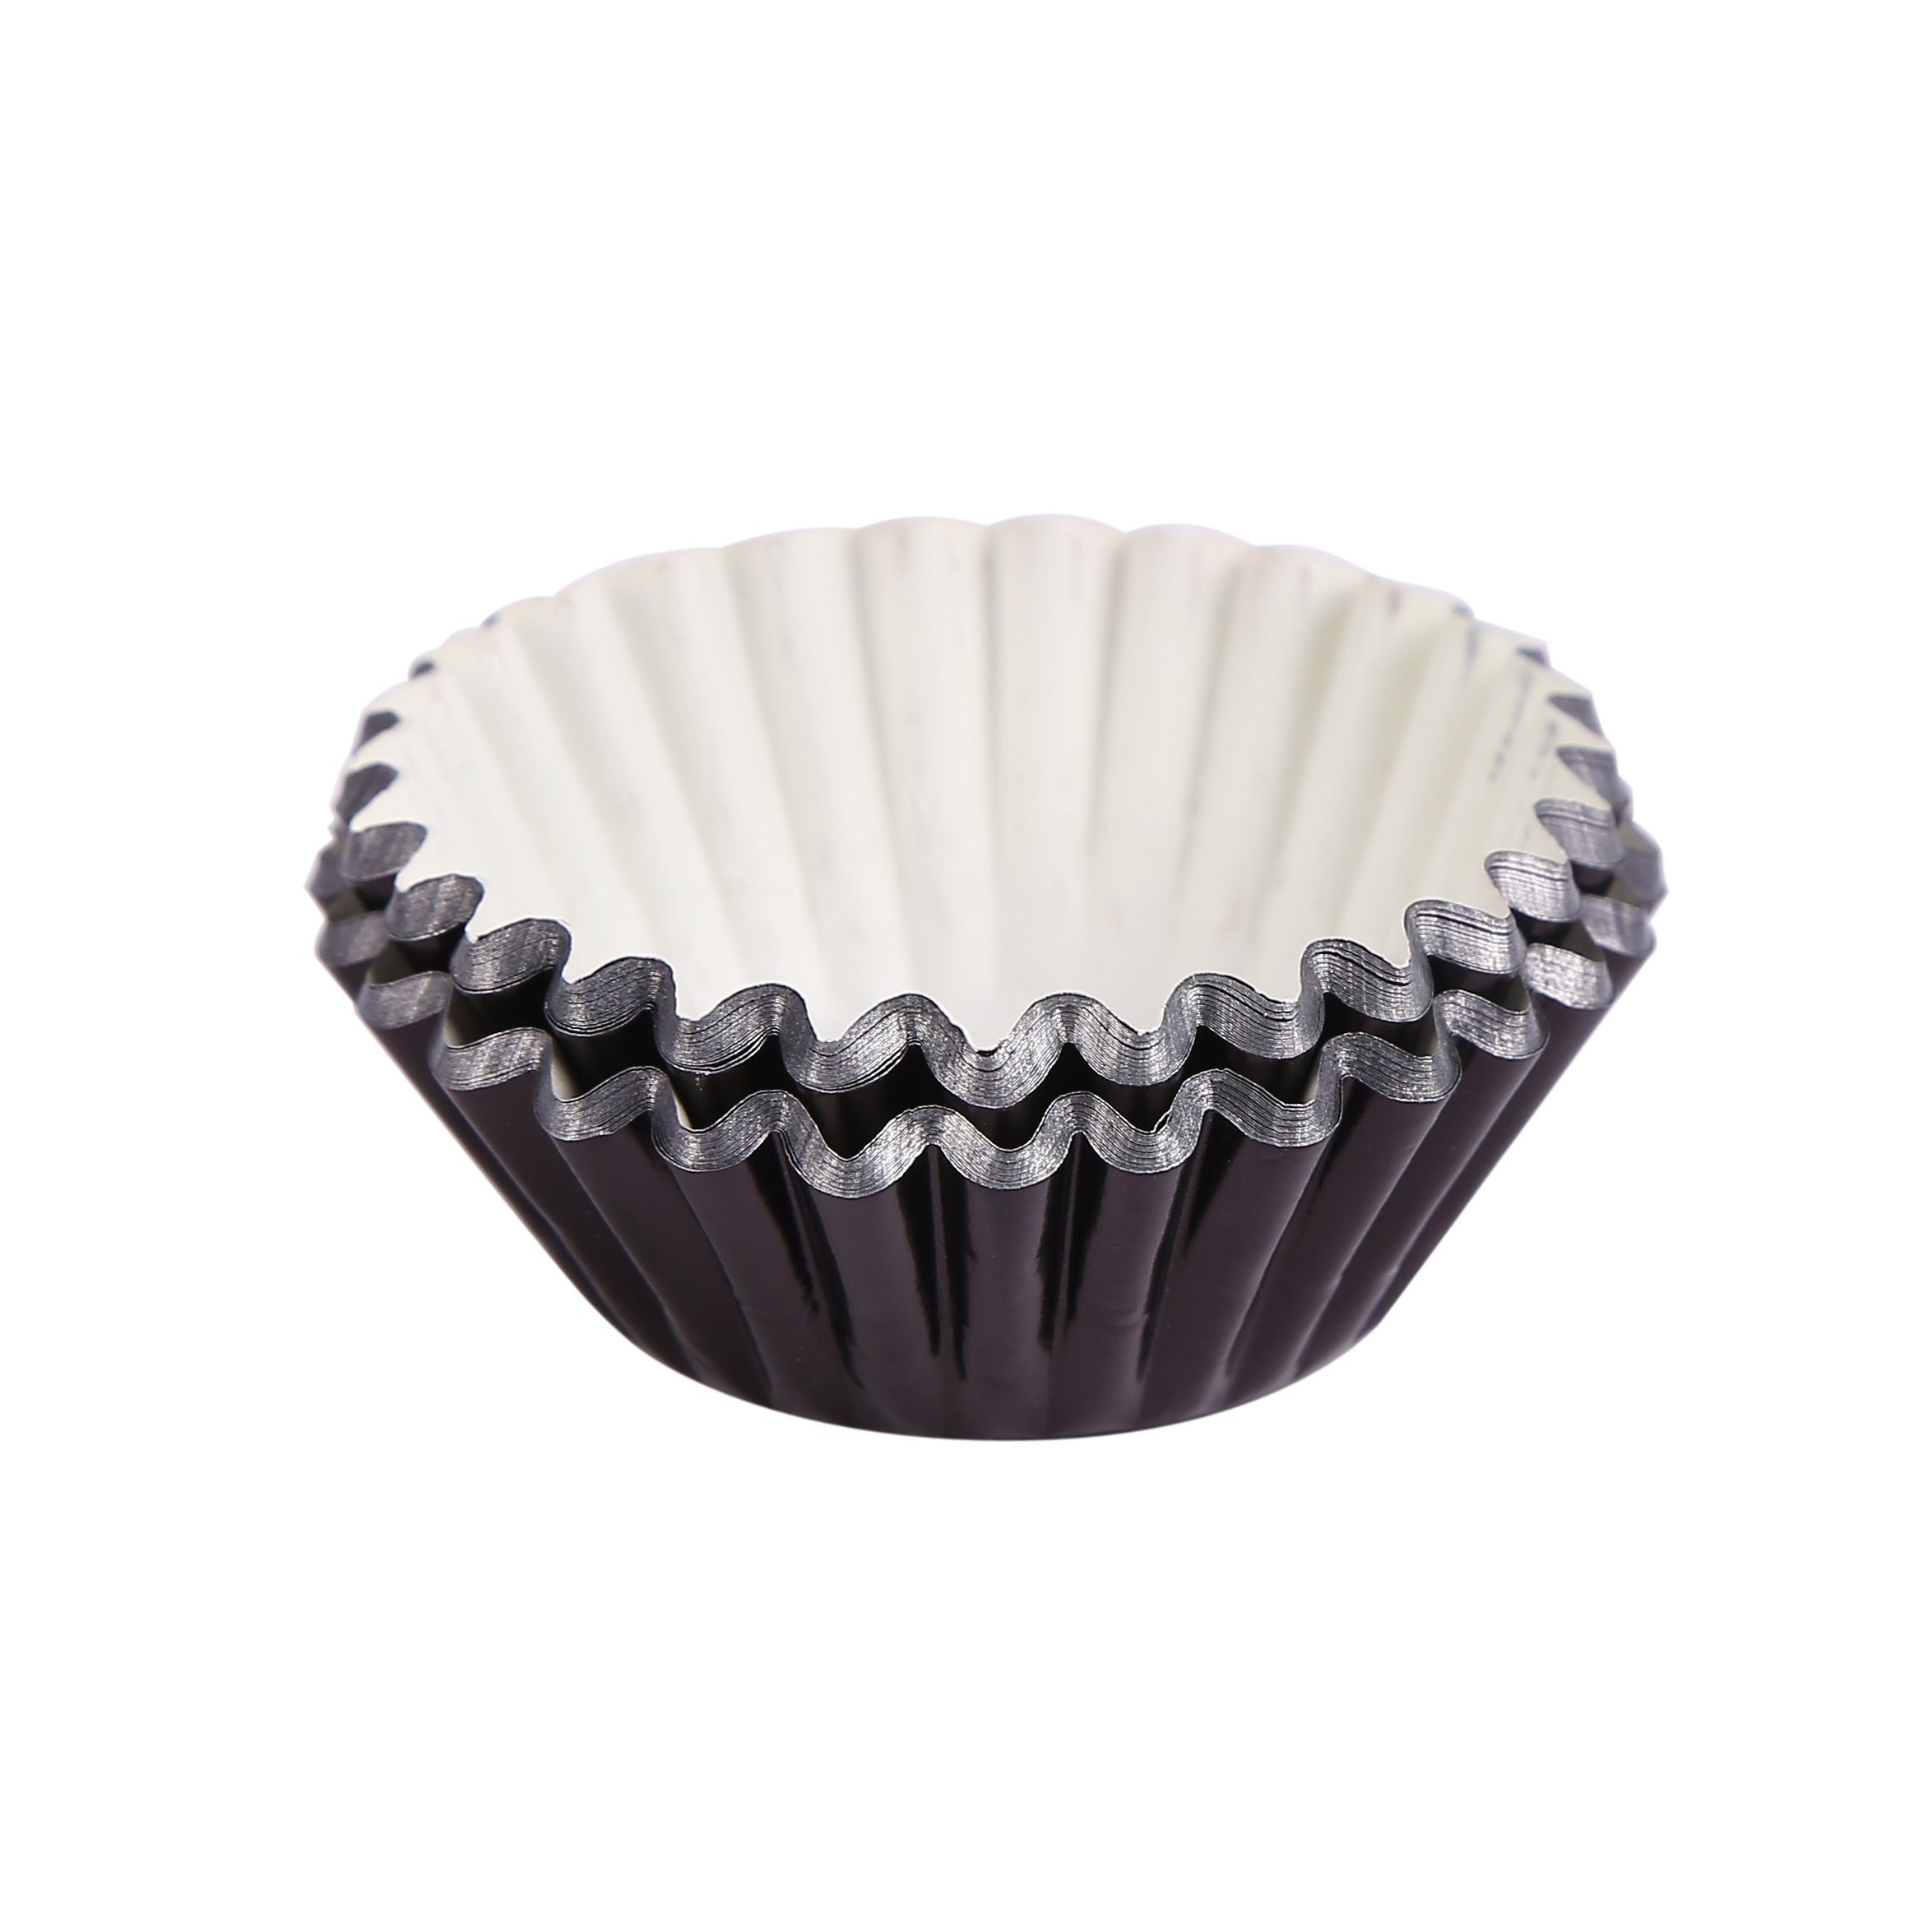 für House kleine Minimuffins 120-tlg), Muffinform und Muffinförmchen Bakery's Miss (Schwarz folienbeschichtet, Metallic-Papierbackförmchen Mini-Cupcakes Mini